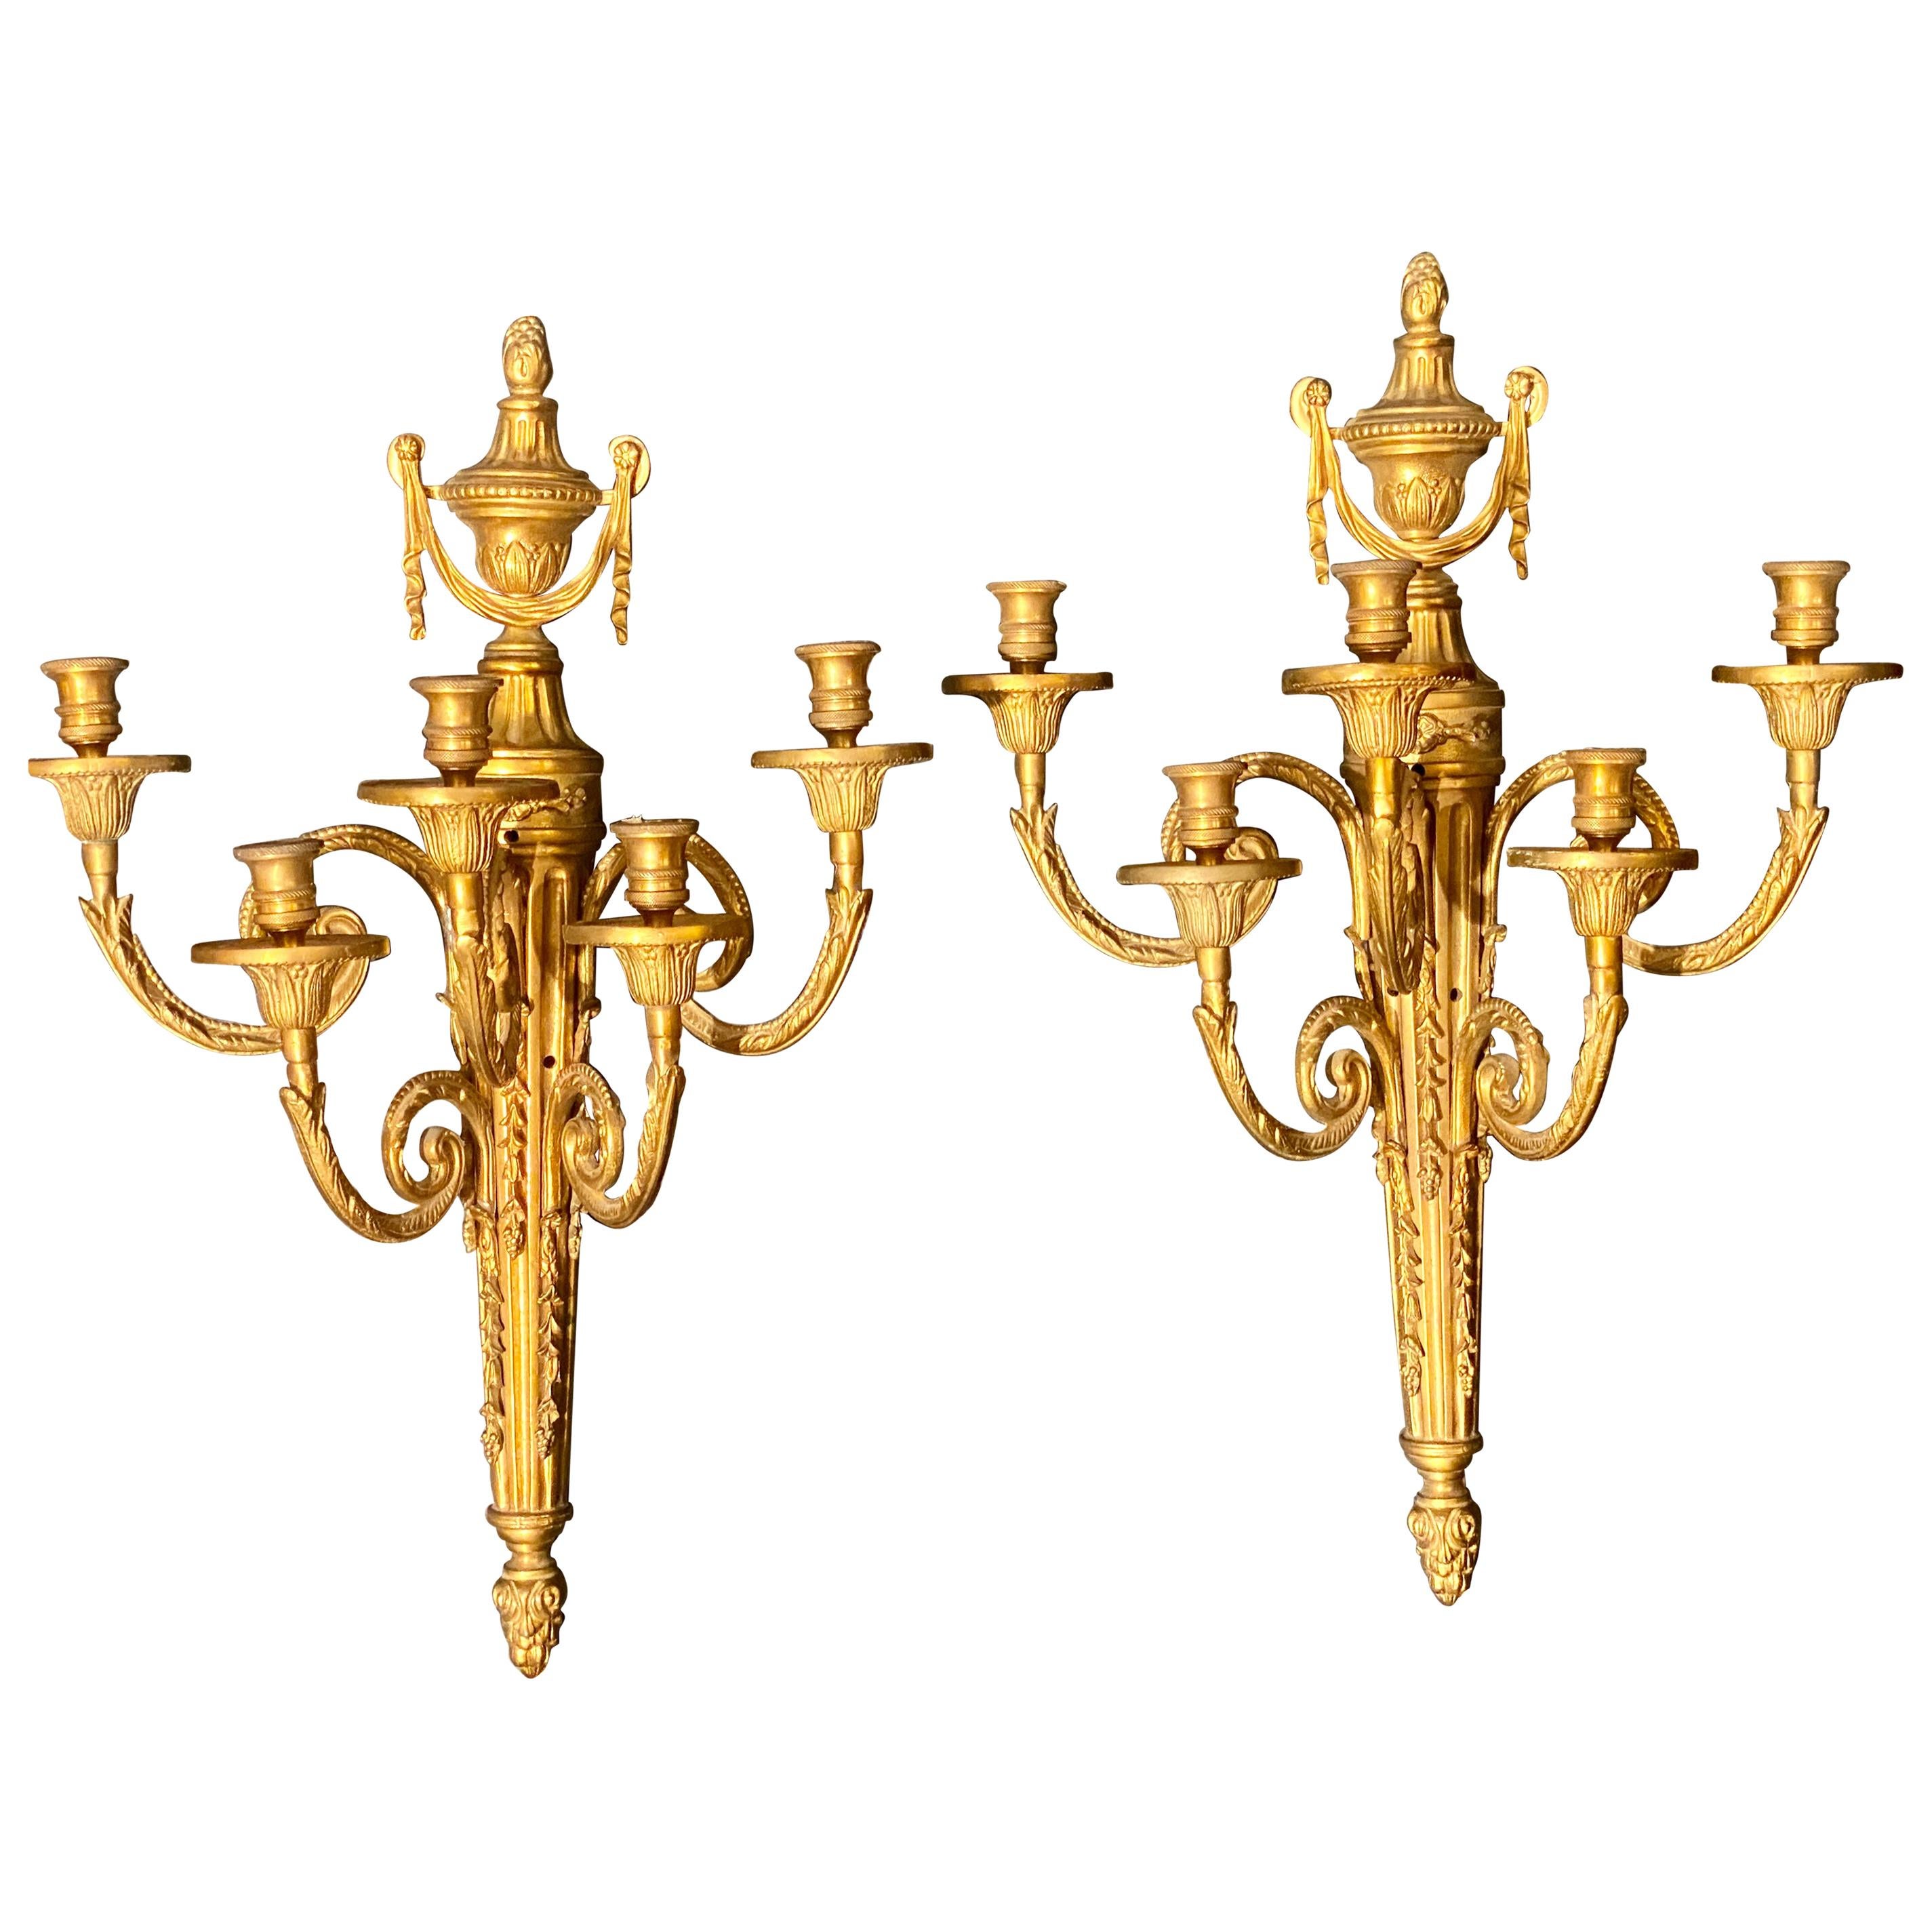 Paar fünfarmige Adams-Stil-Dore-Bronze-Konsolen, Wand Quaste verziert. Der Preis gilt für ein Paar.

